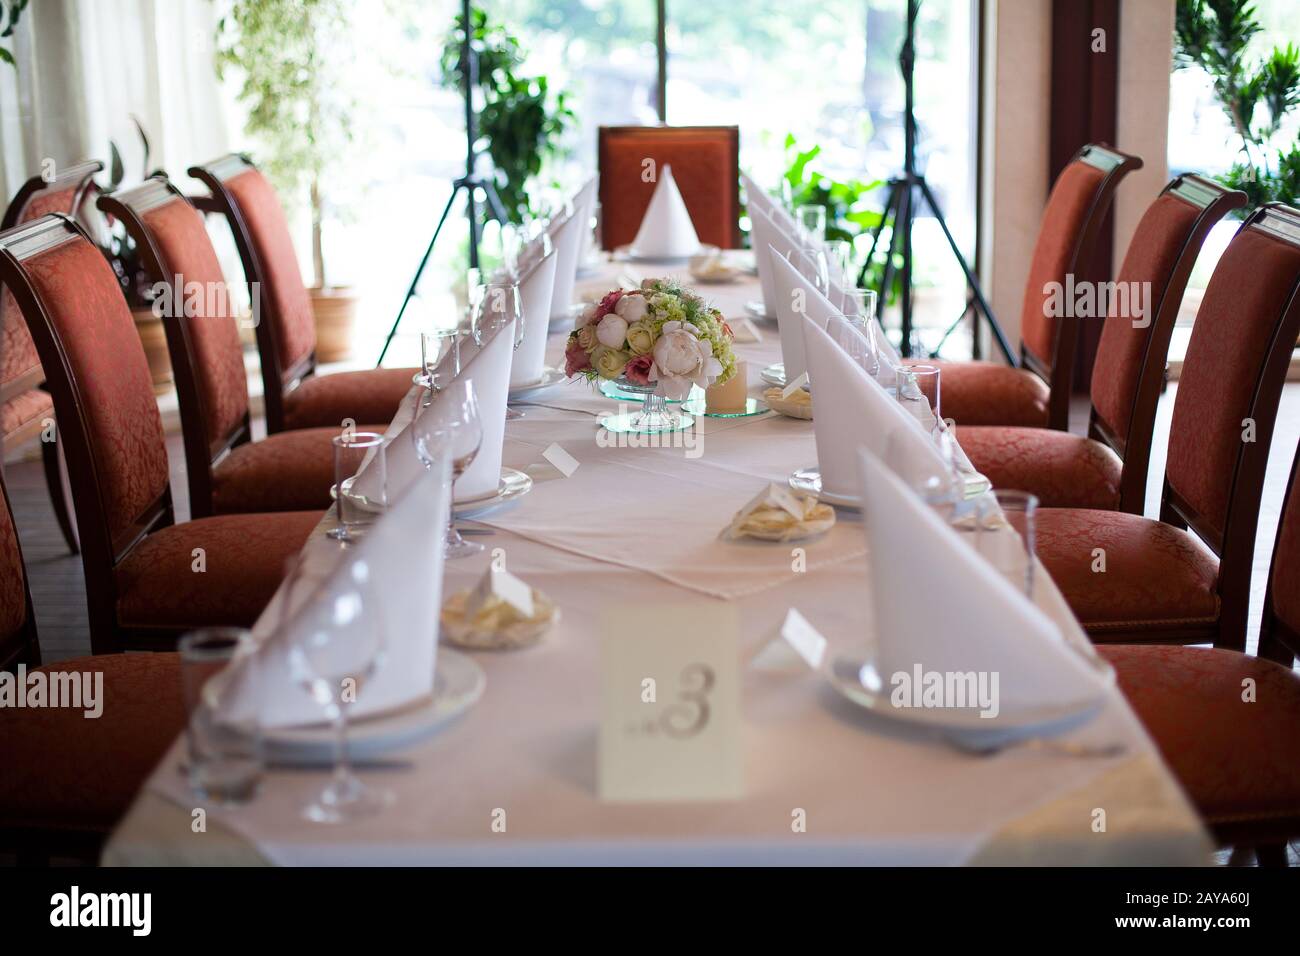 Set de table pour une partie de l'événement ou réception de mariage Banque D'Images